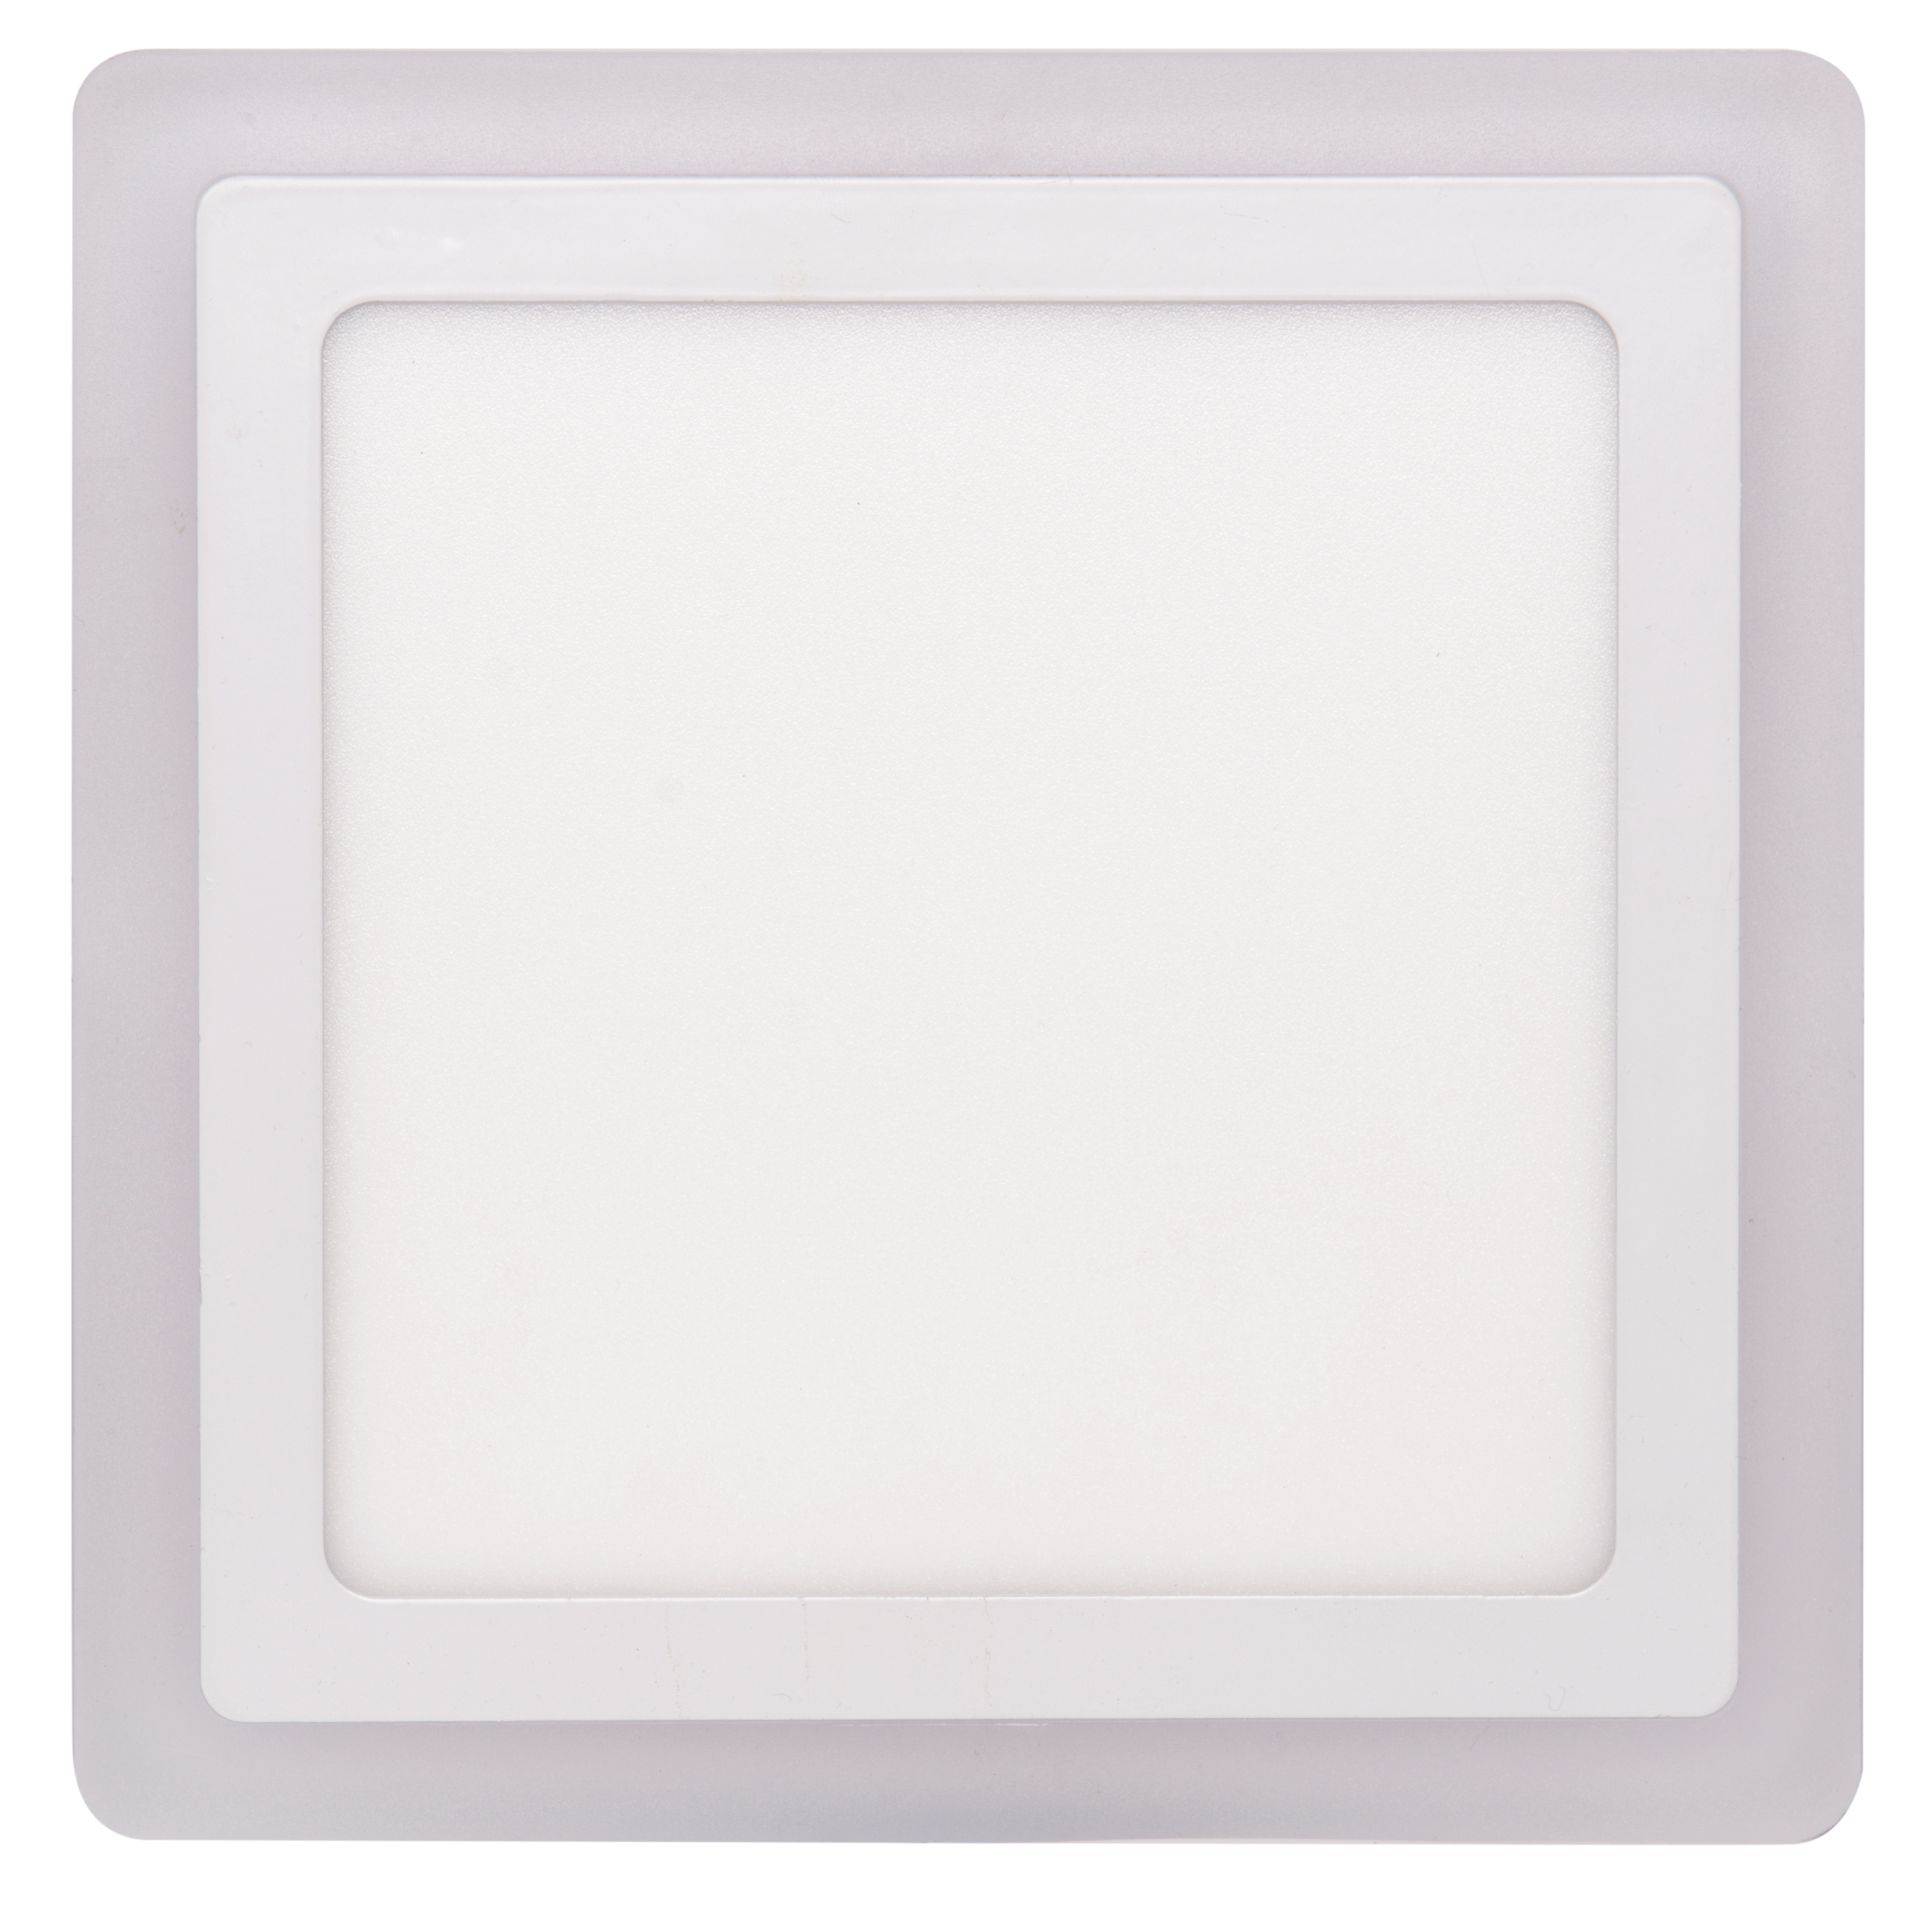 Ecolite Bílý vestavný LED panel hranatý 245 x 245mm 18W+6W podsvícený LED-DUO-S18W